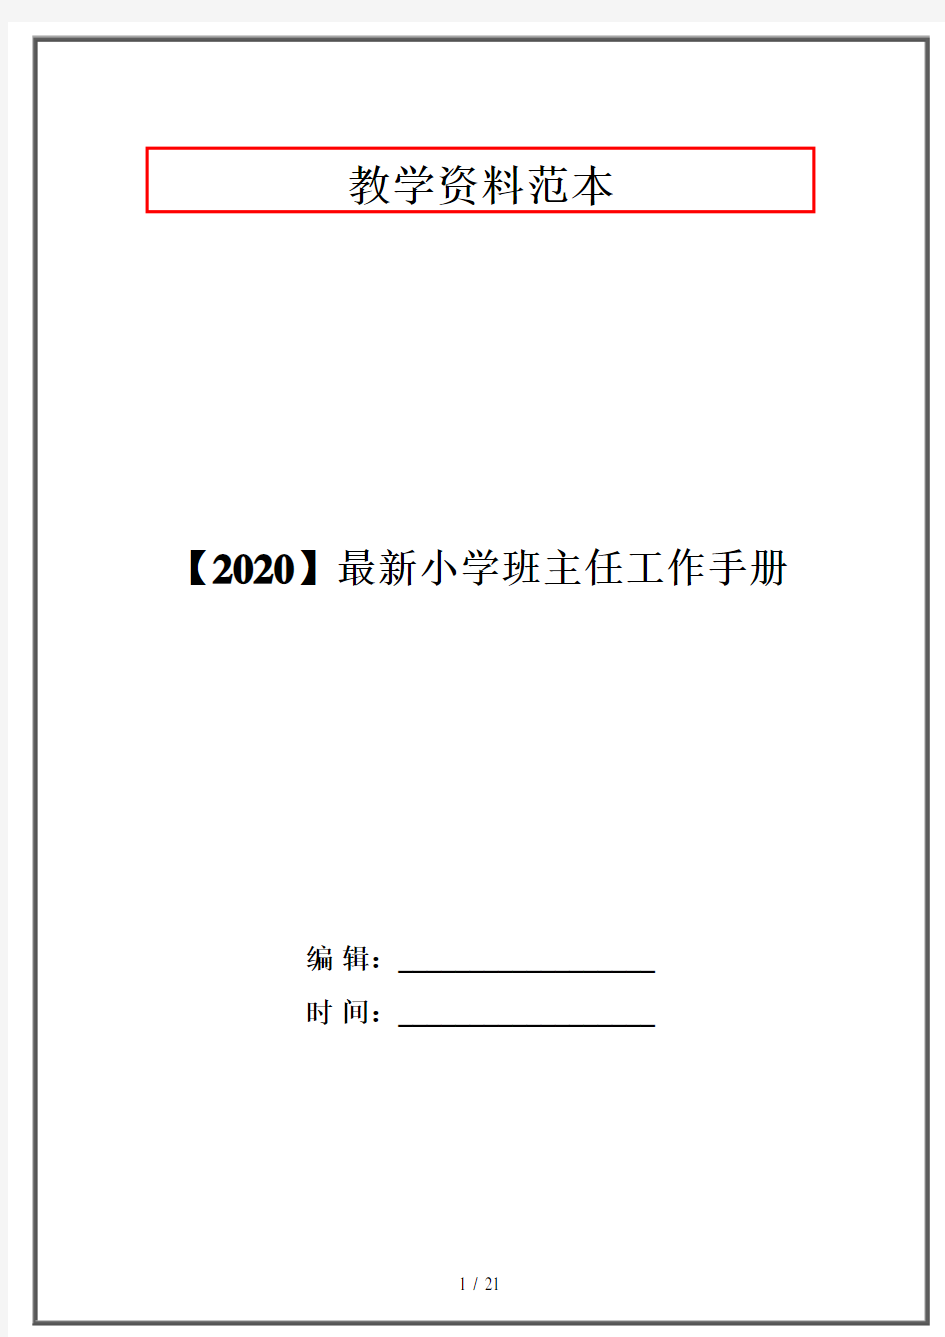 【2020】最新小学班主任工作手册